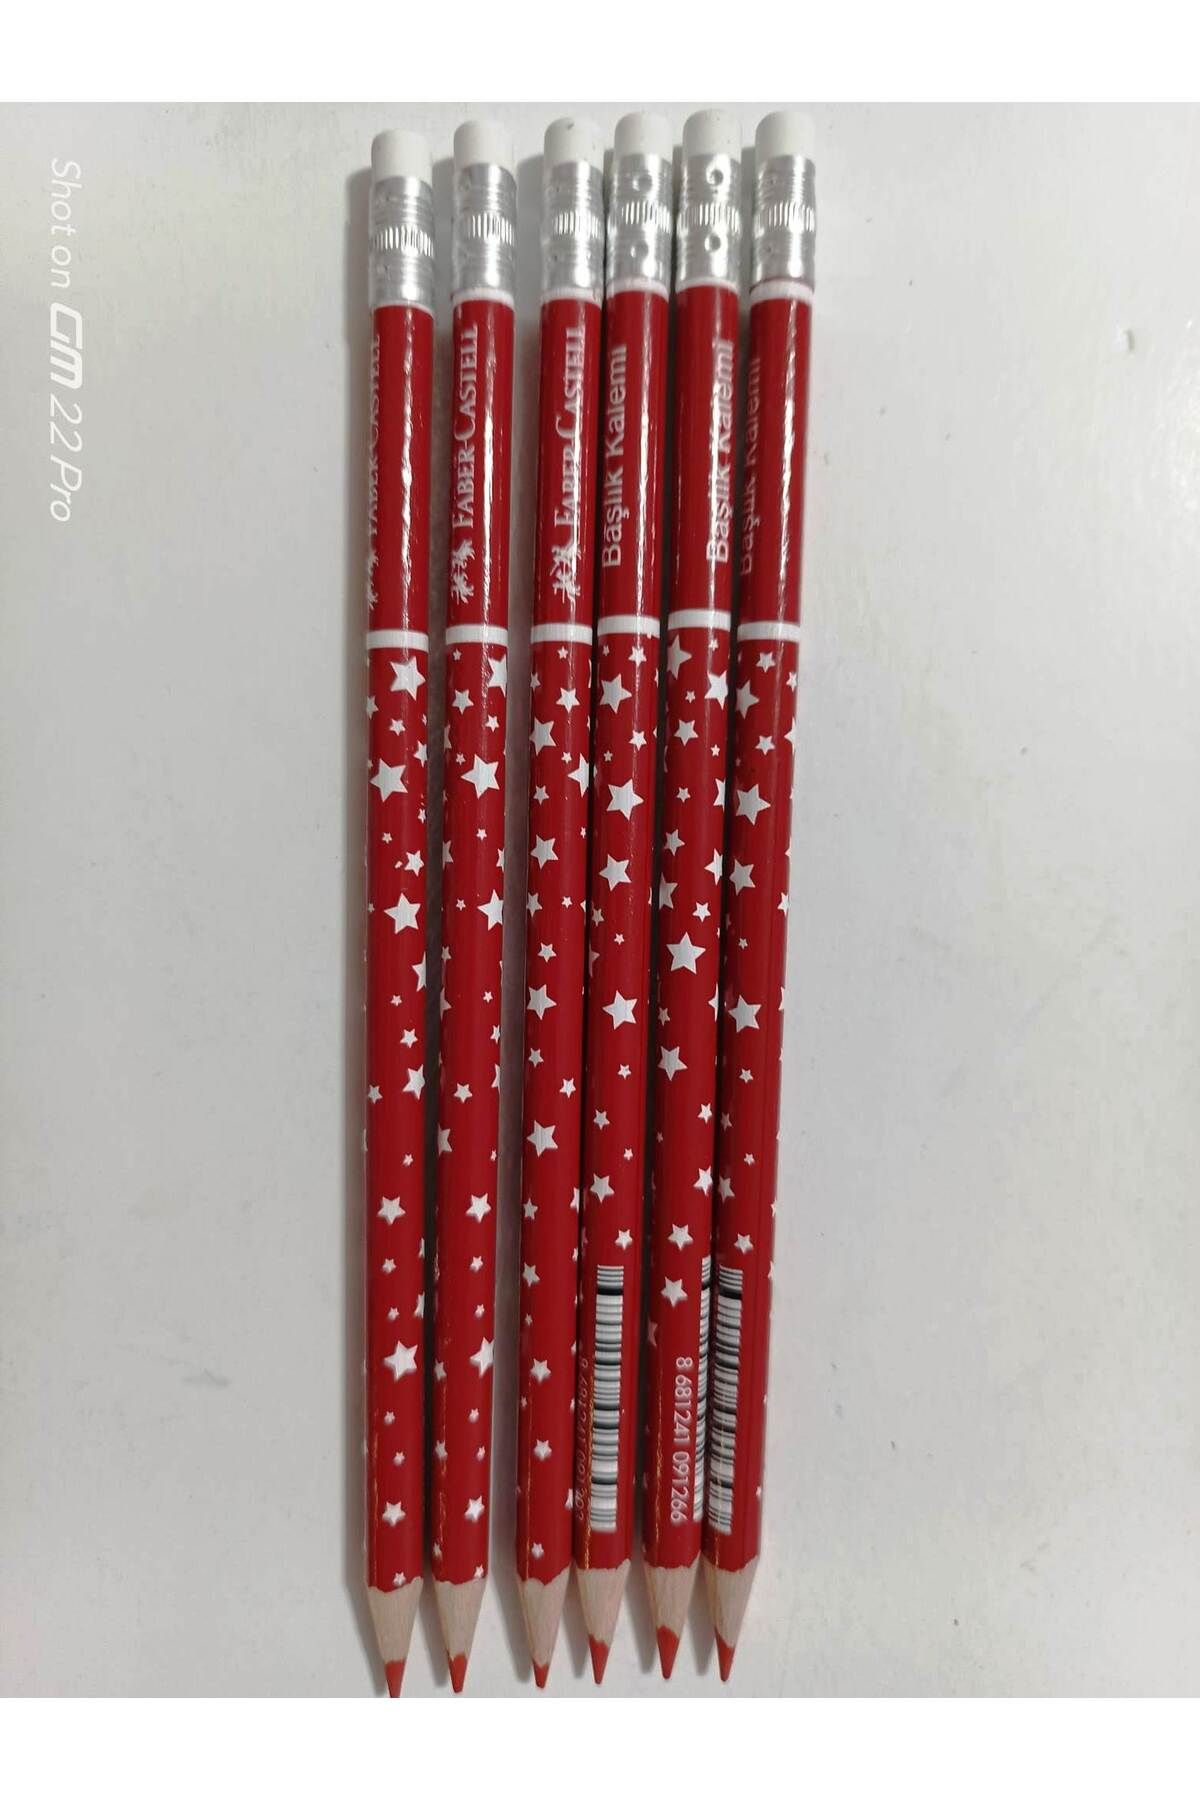 Faber Castell kırmızı kurşun kalem silgili yıldız desenli (6adet)